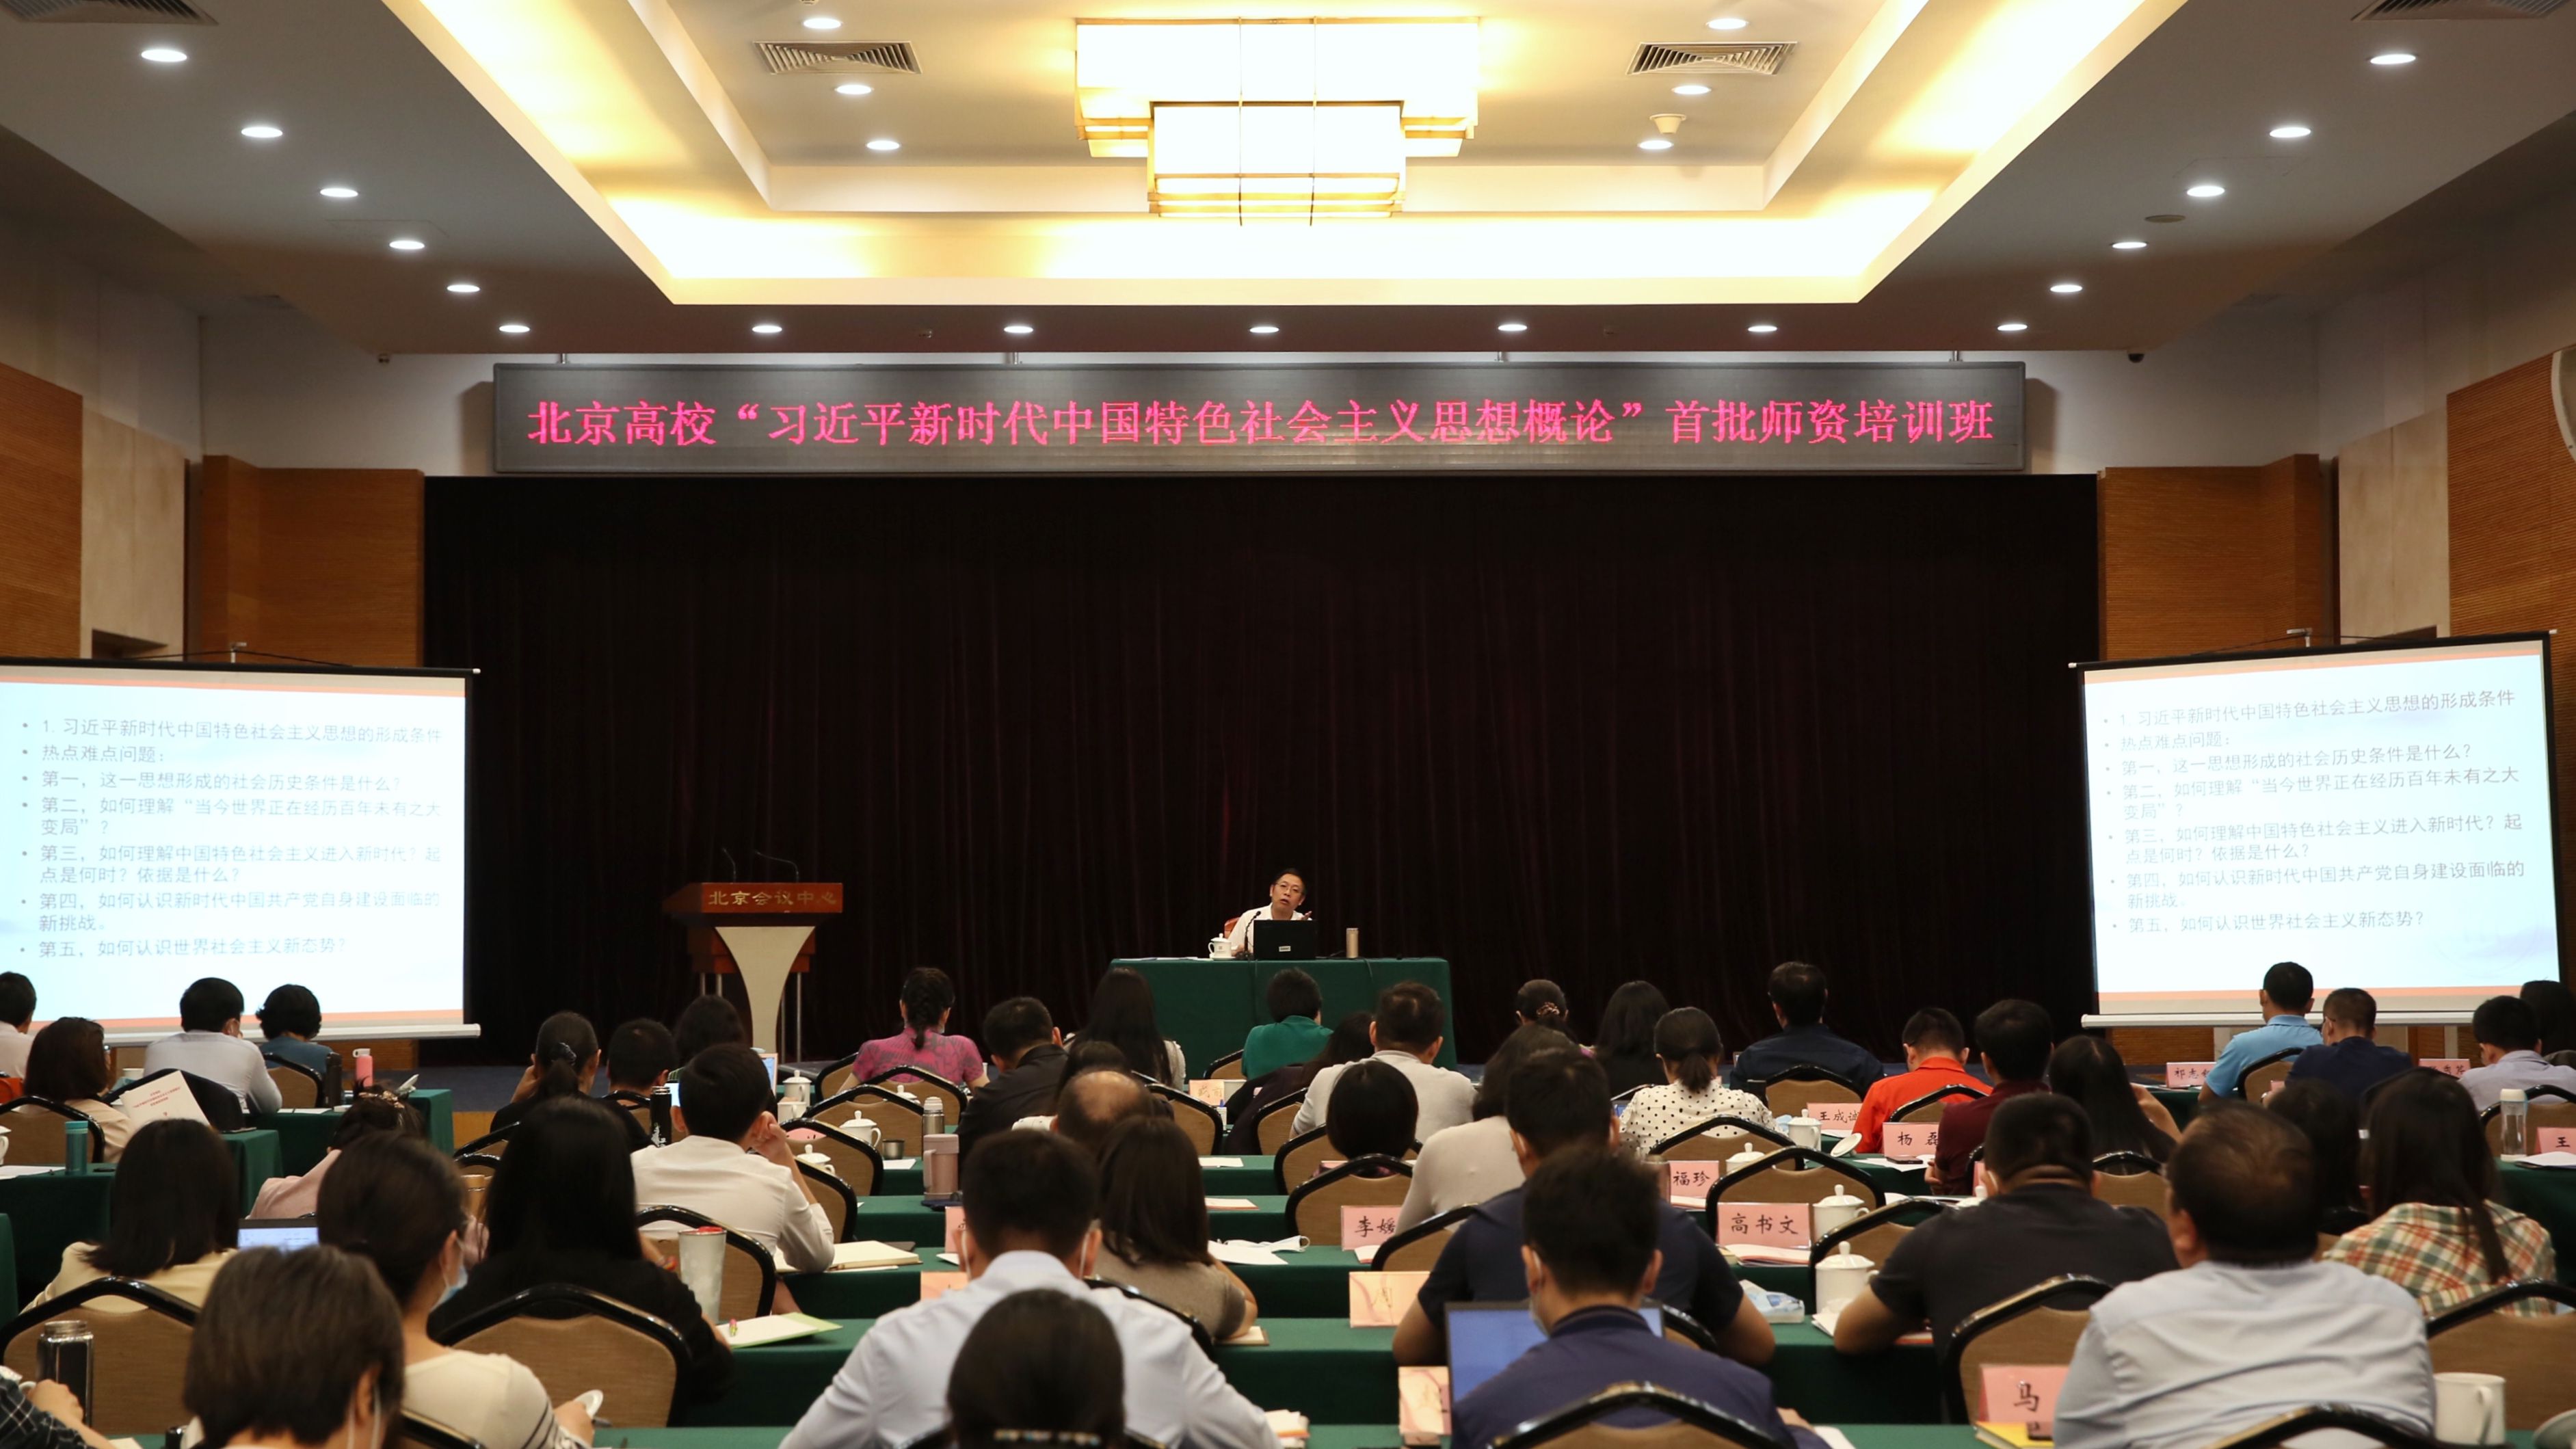 中国人民大学习近平新时代中国特色社会主义思想研究院院长秦宣在现场分享教学感受。